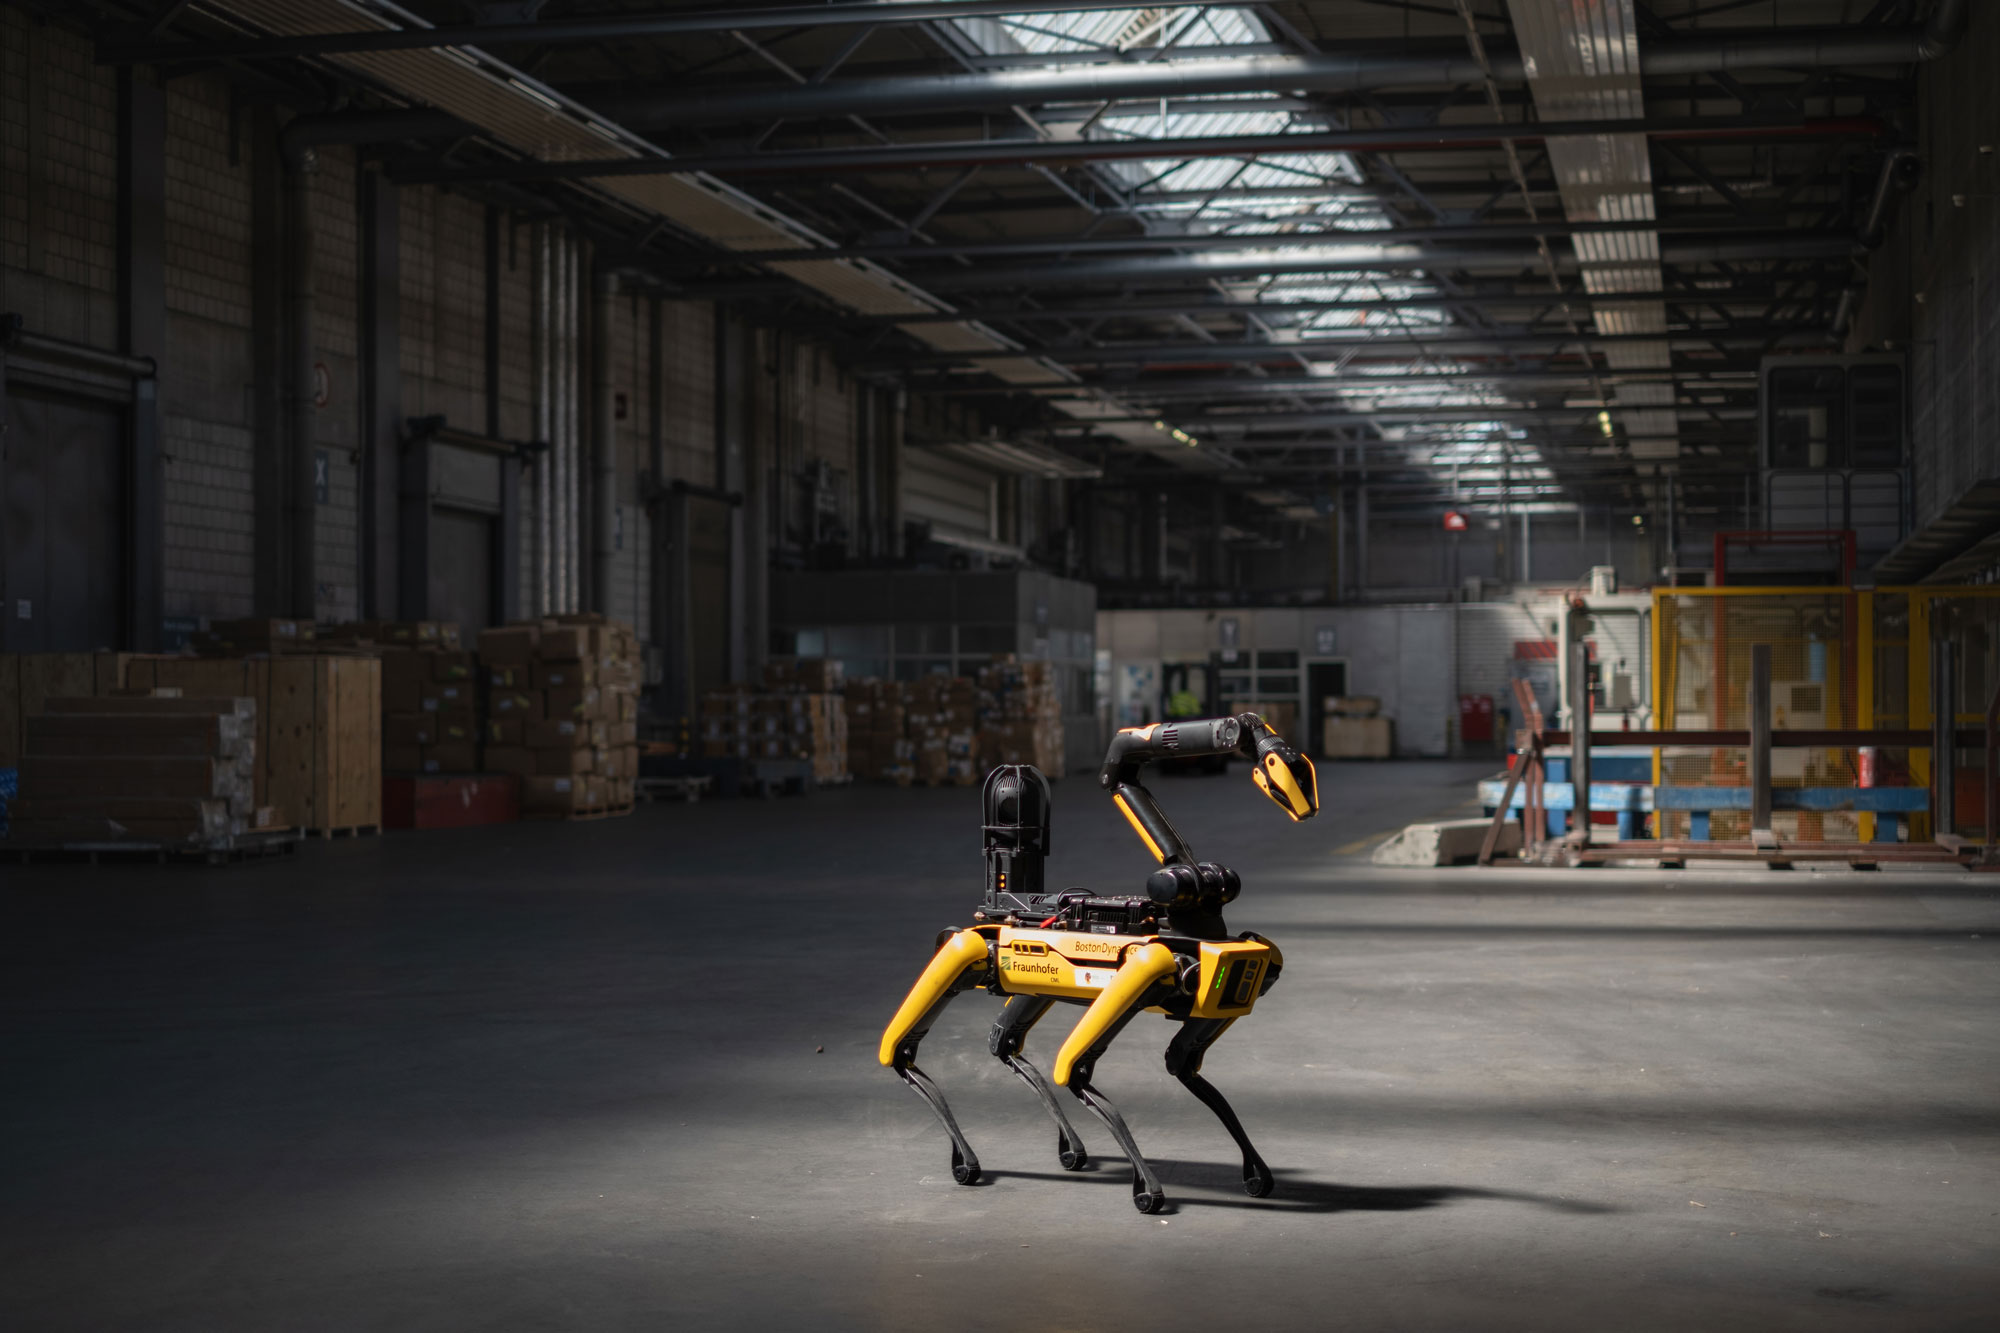 Roboterhund Spot von Boston Dynamics patrouilliert autonom in der Lagerhalle bei der Luftfrachtabfertigung am Flughafen München während der Präsentation des Forschungsprojekts DTAC.